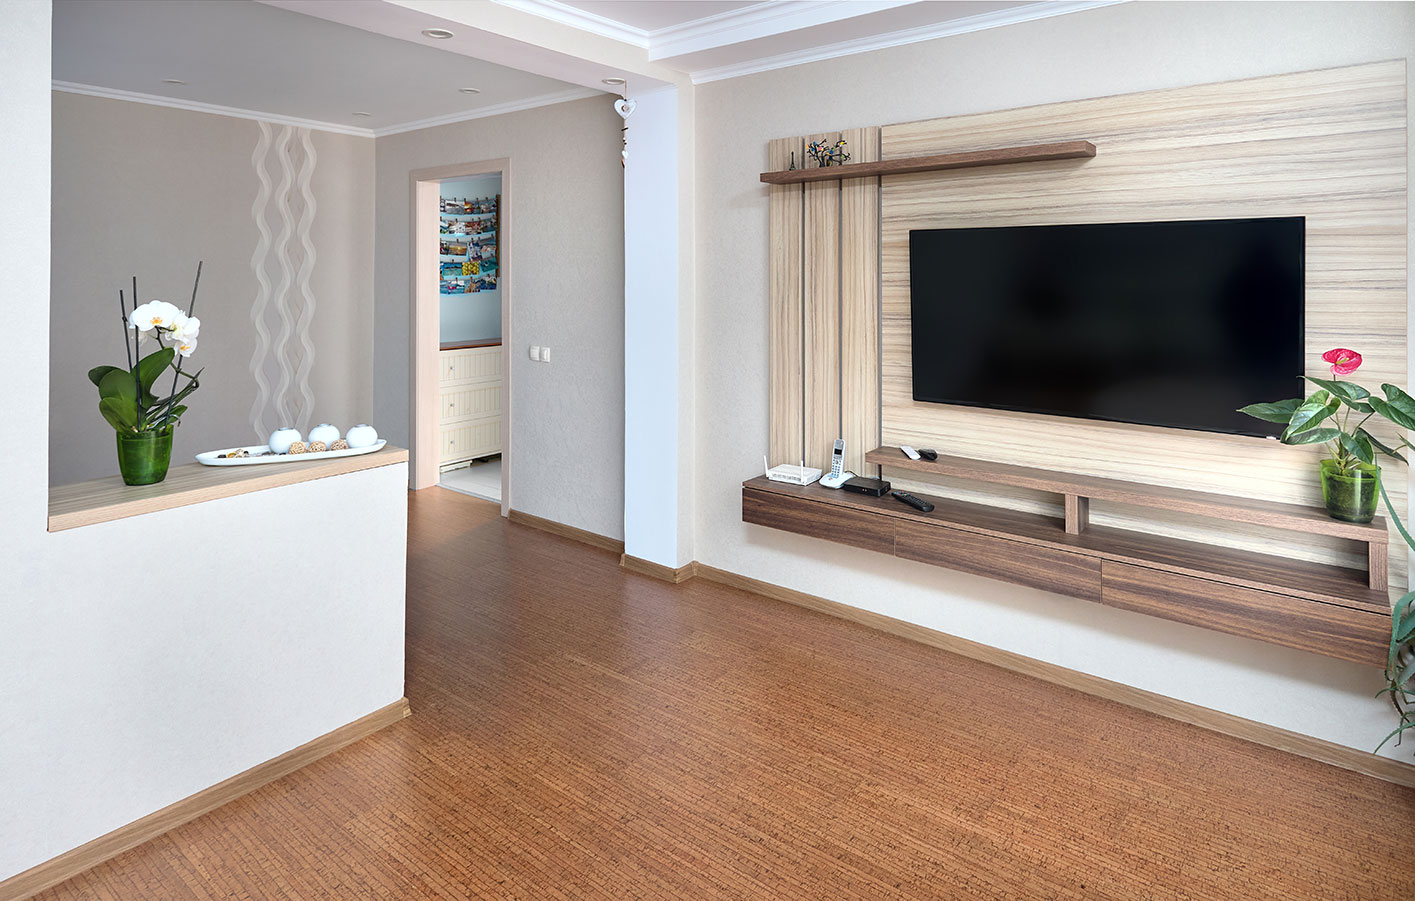 Korkboden in einem Wohnzimmer mit moderner Einrichtung